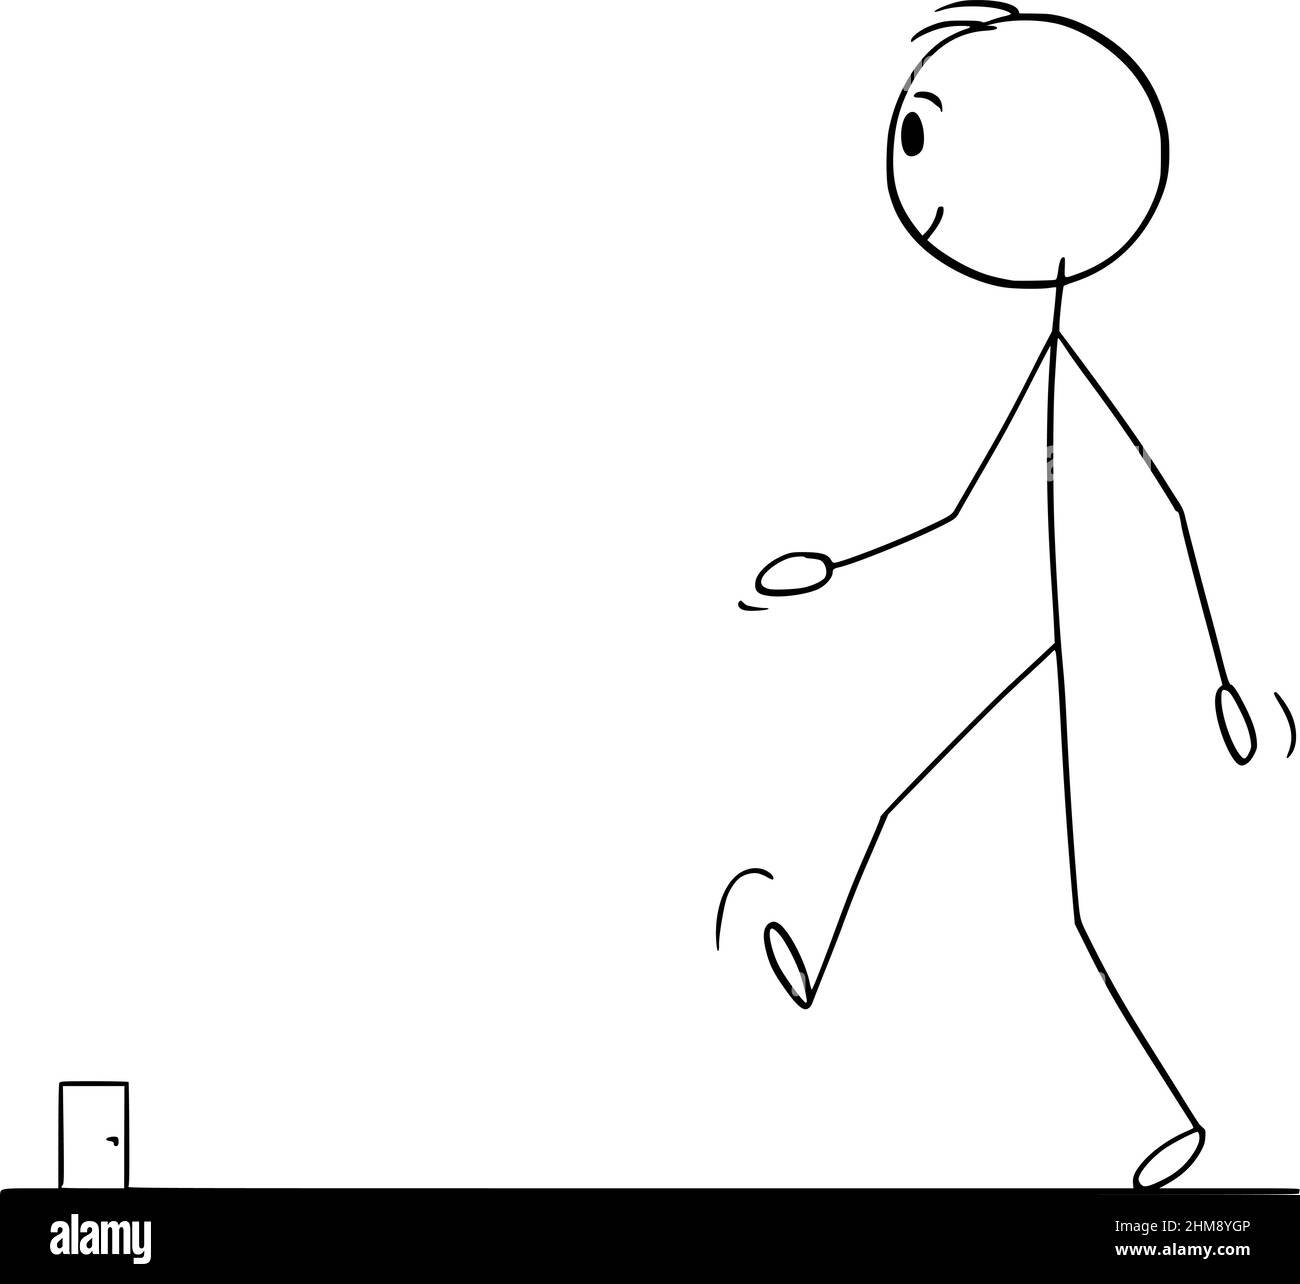 Person, die zu einer entfernten Tür geht, um sie zu verlassen oder einzutreten, Vektorgrafik Cartoon Stick Figure Illustration Stock Vektor